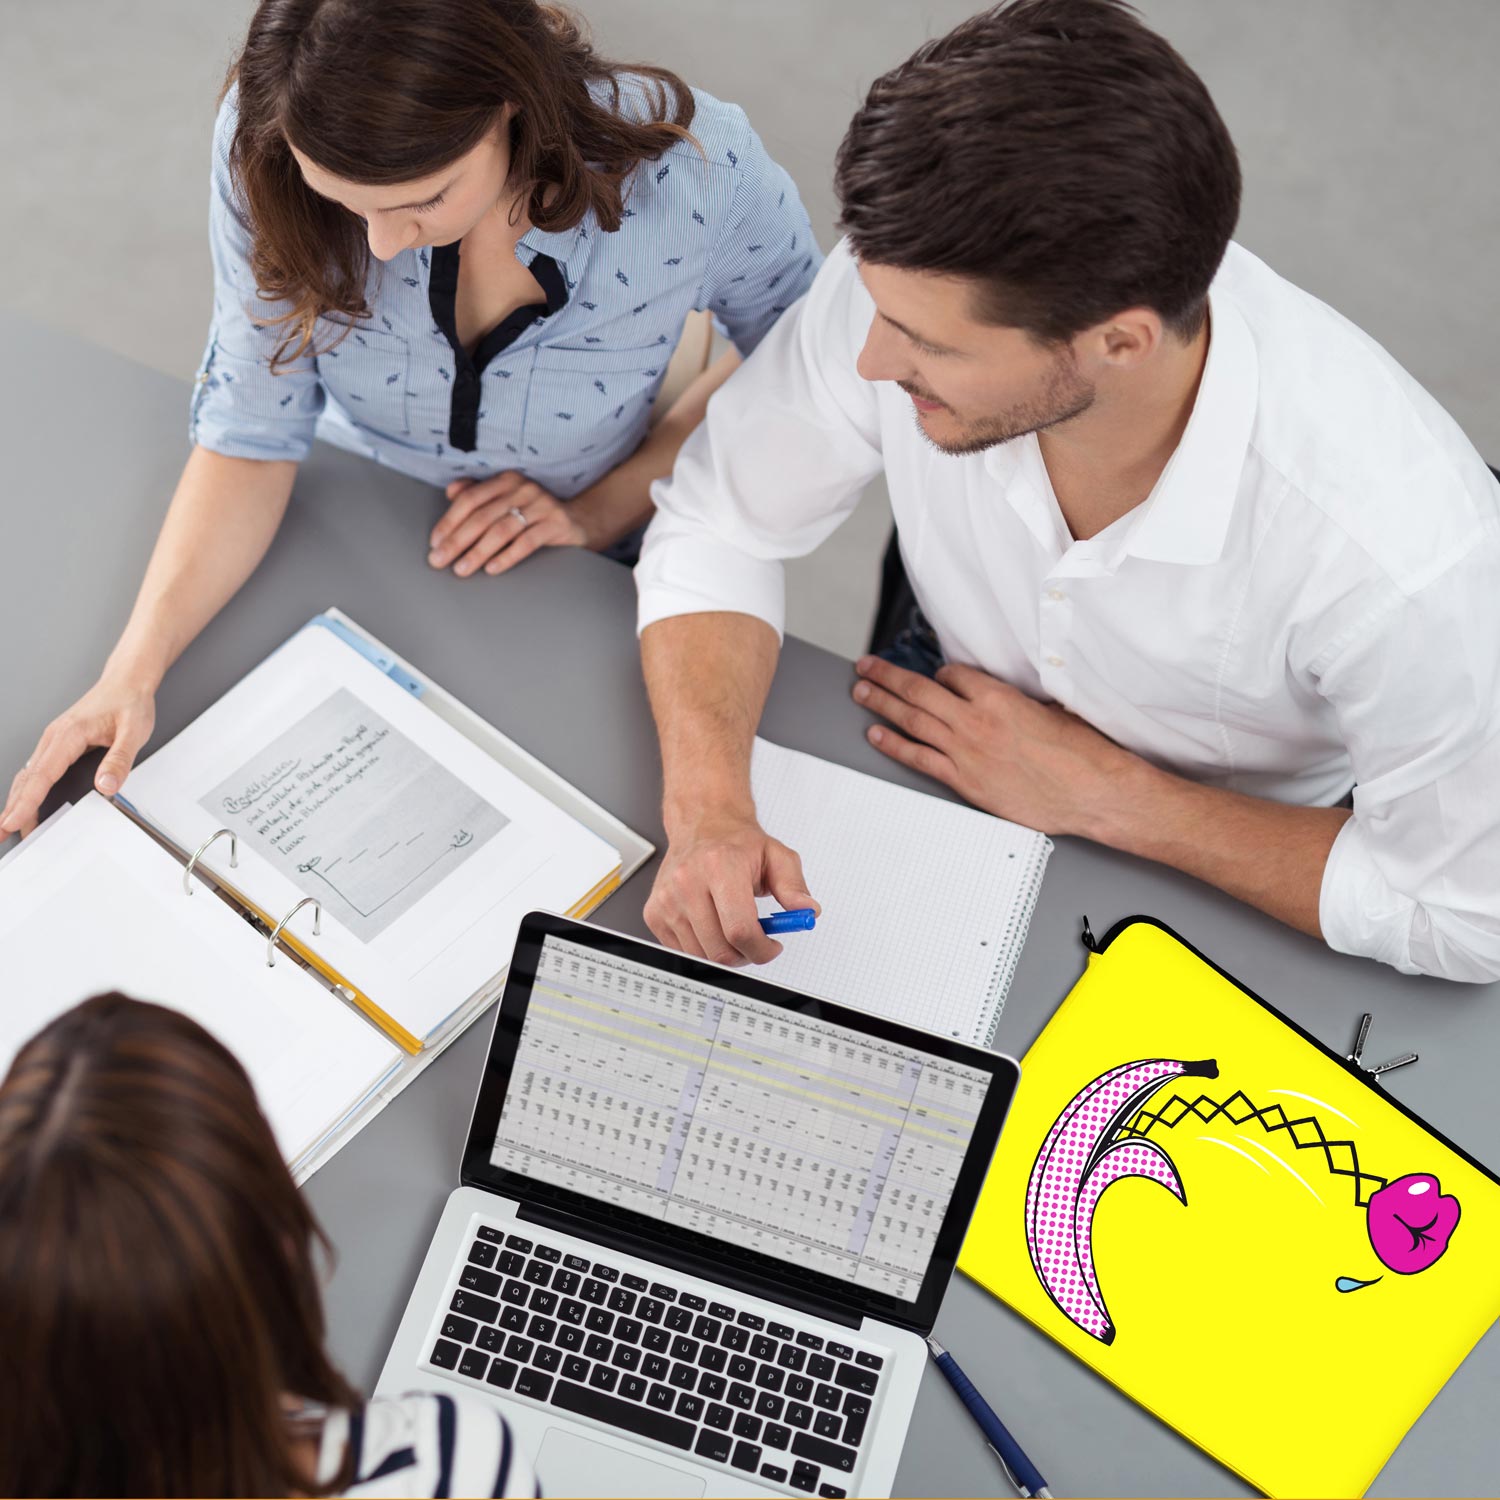 LS170 Surprise Designer Schutzhülle für Laptop in gelb als Business-Zubehör im Büro, bei Kunden und auf Dienstreisen